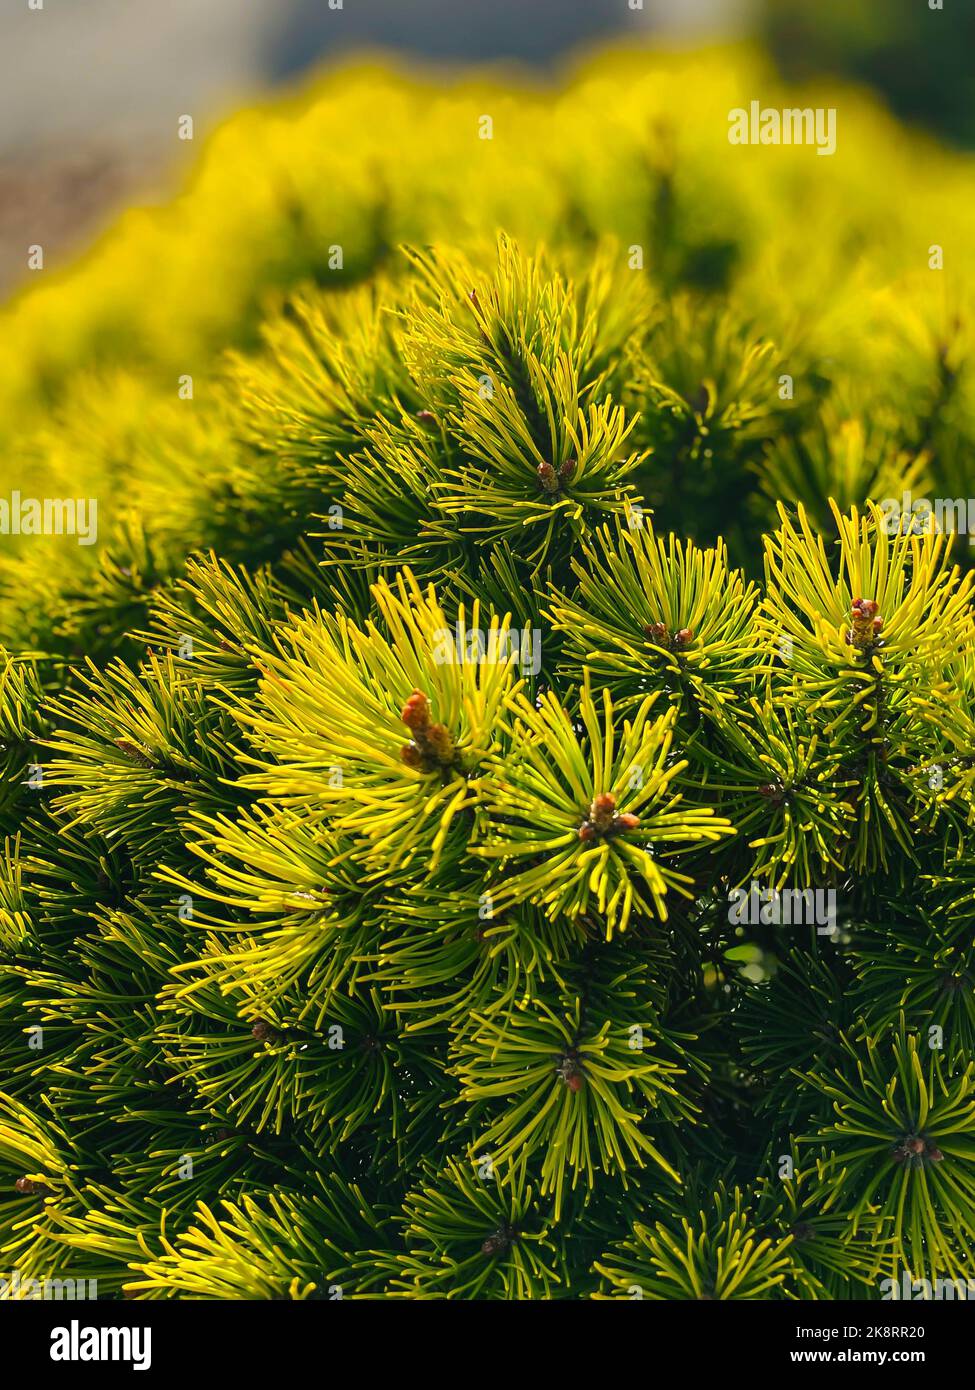 A selective focus of Mountain pine branches o a sunny day Stock Photo